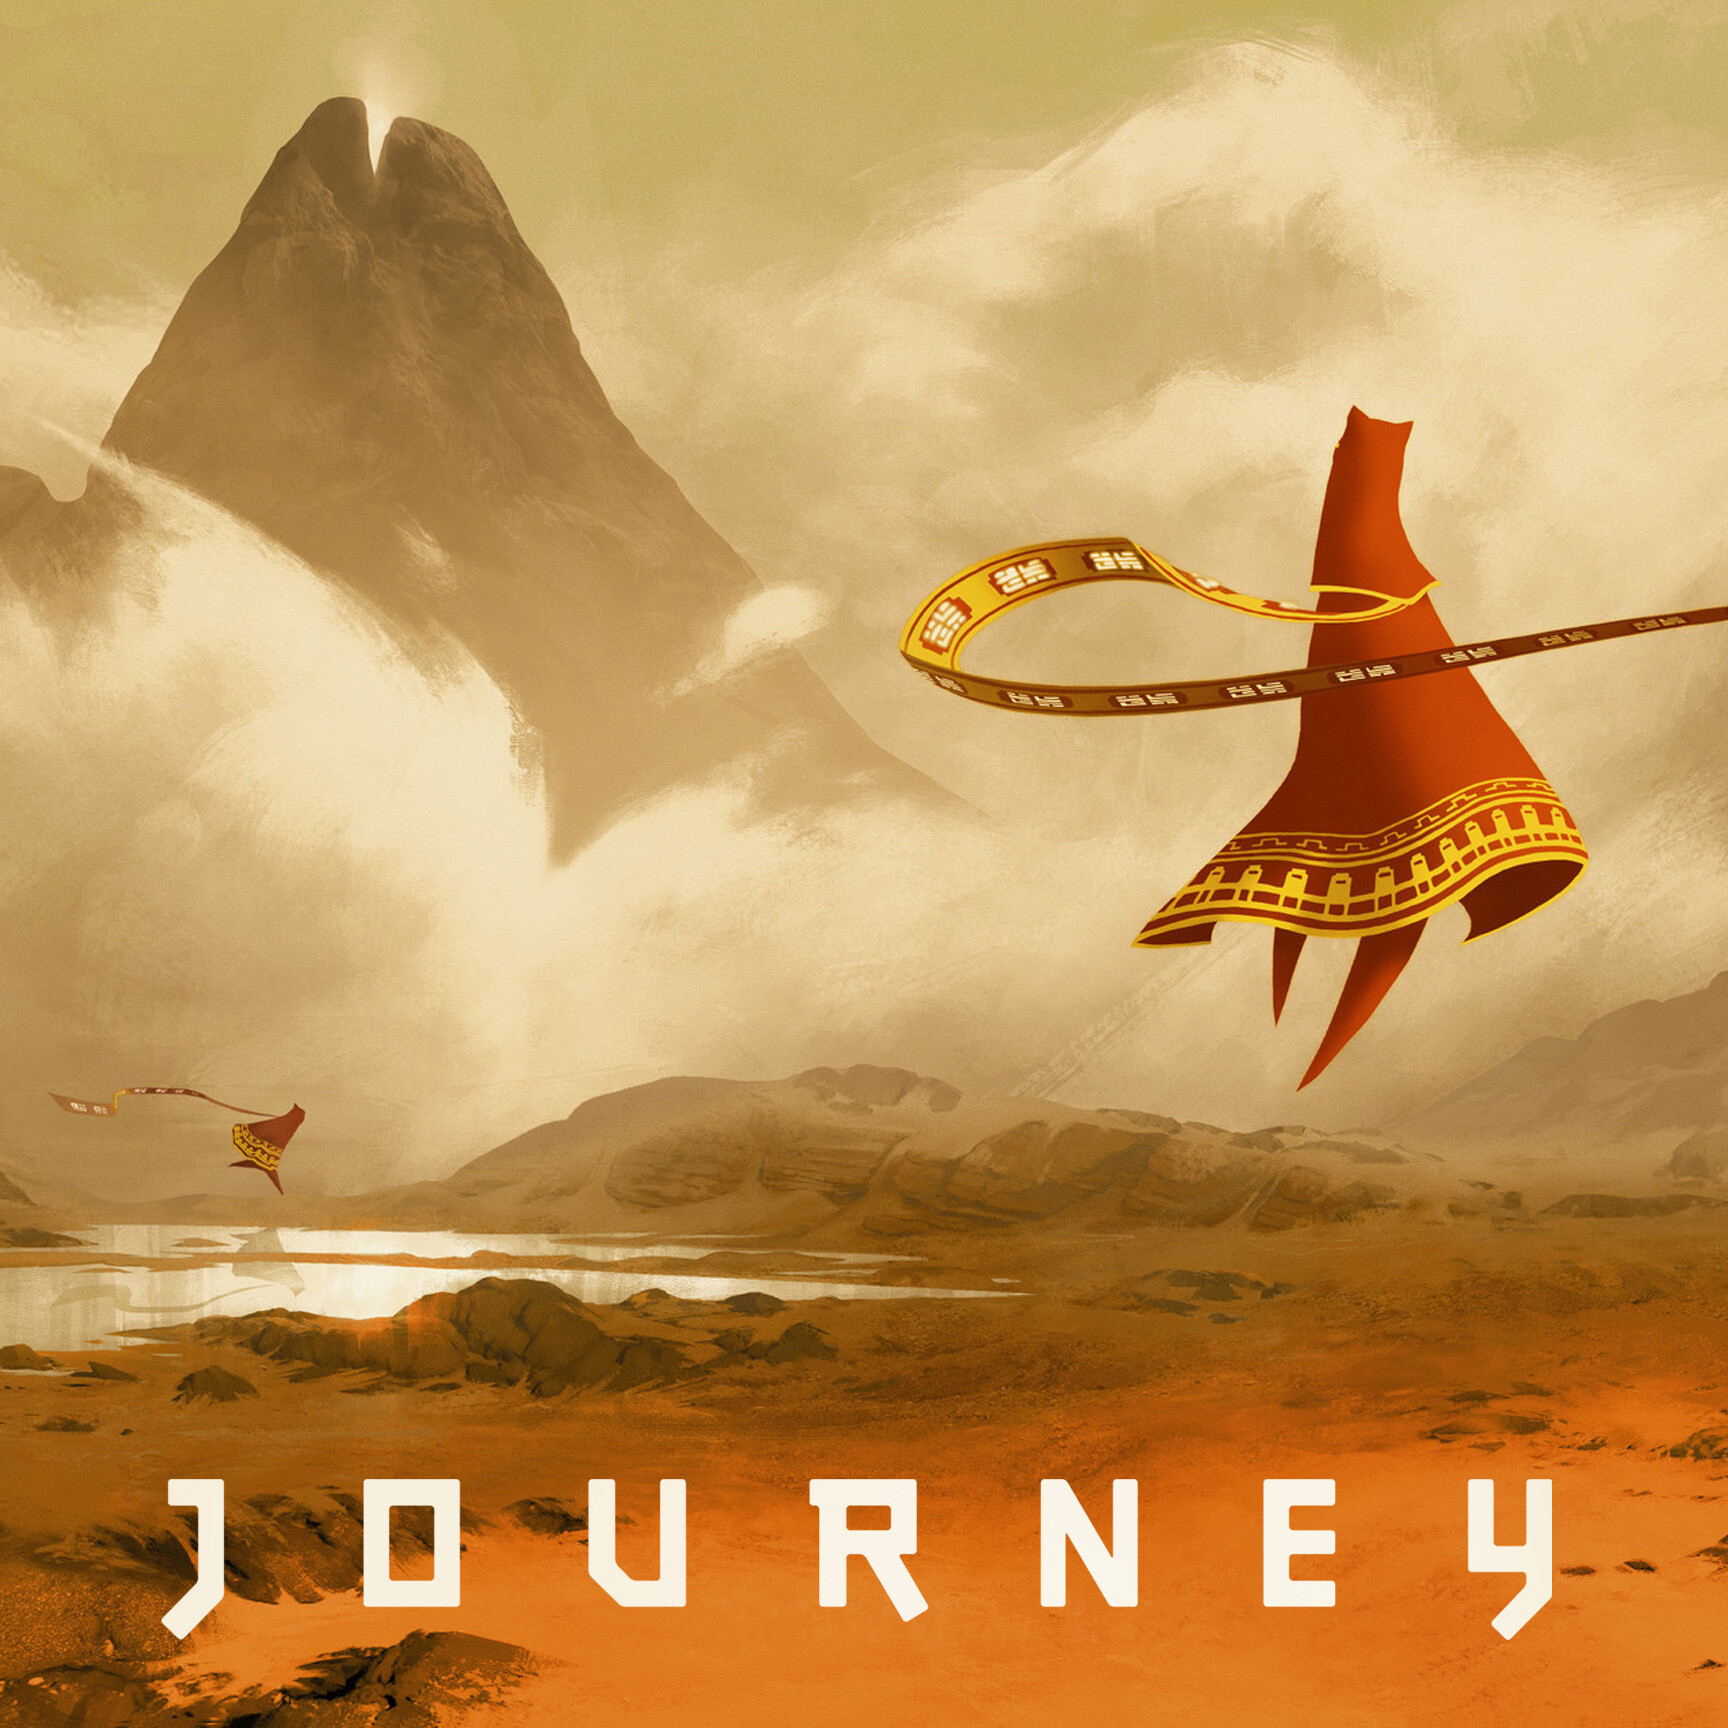 Джорни игра. Journey (игра, 2012). Journey thatgamecompany. Путешествие игра Journey. Джорни путешествие игра.